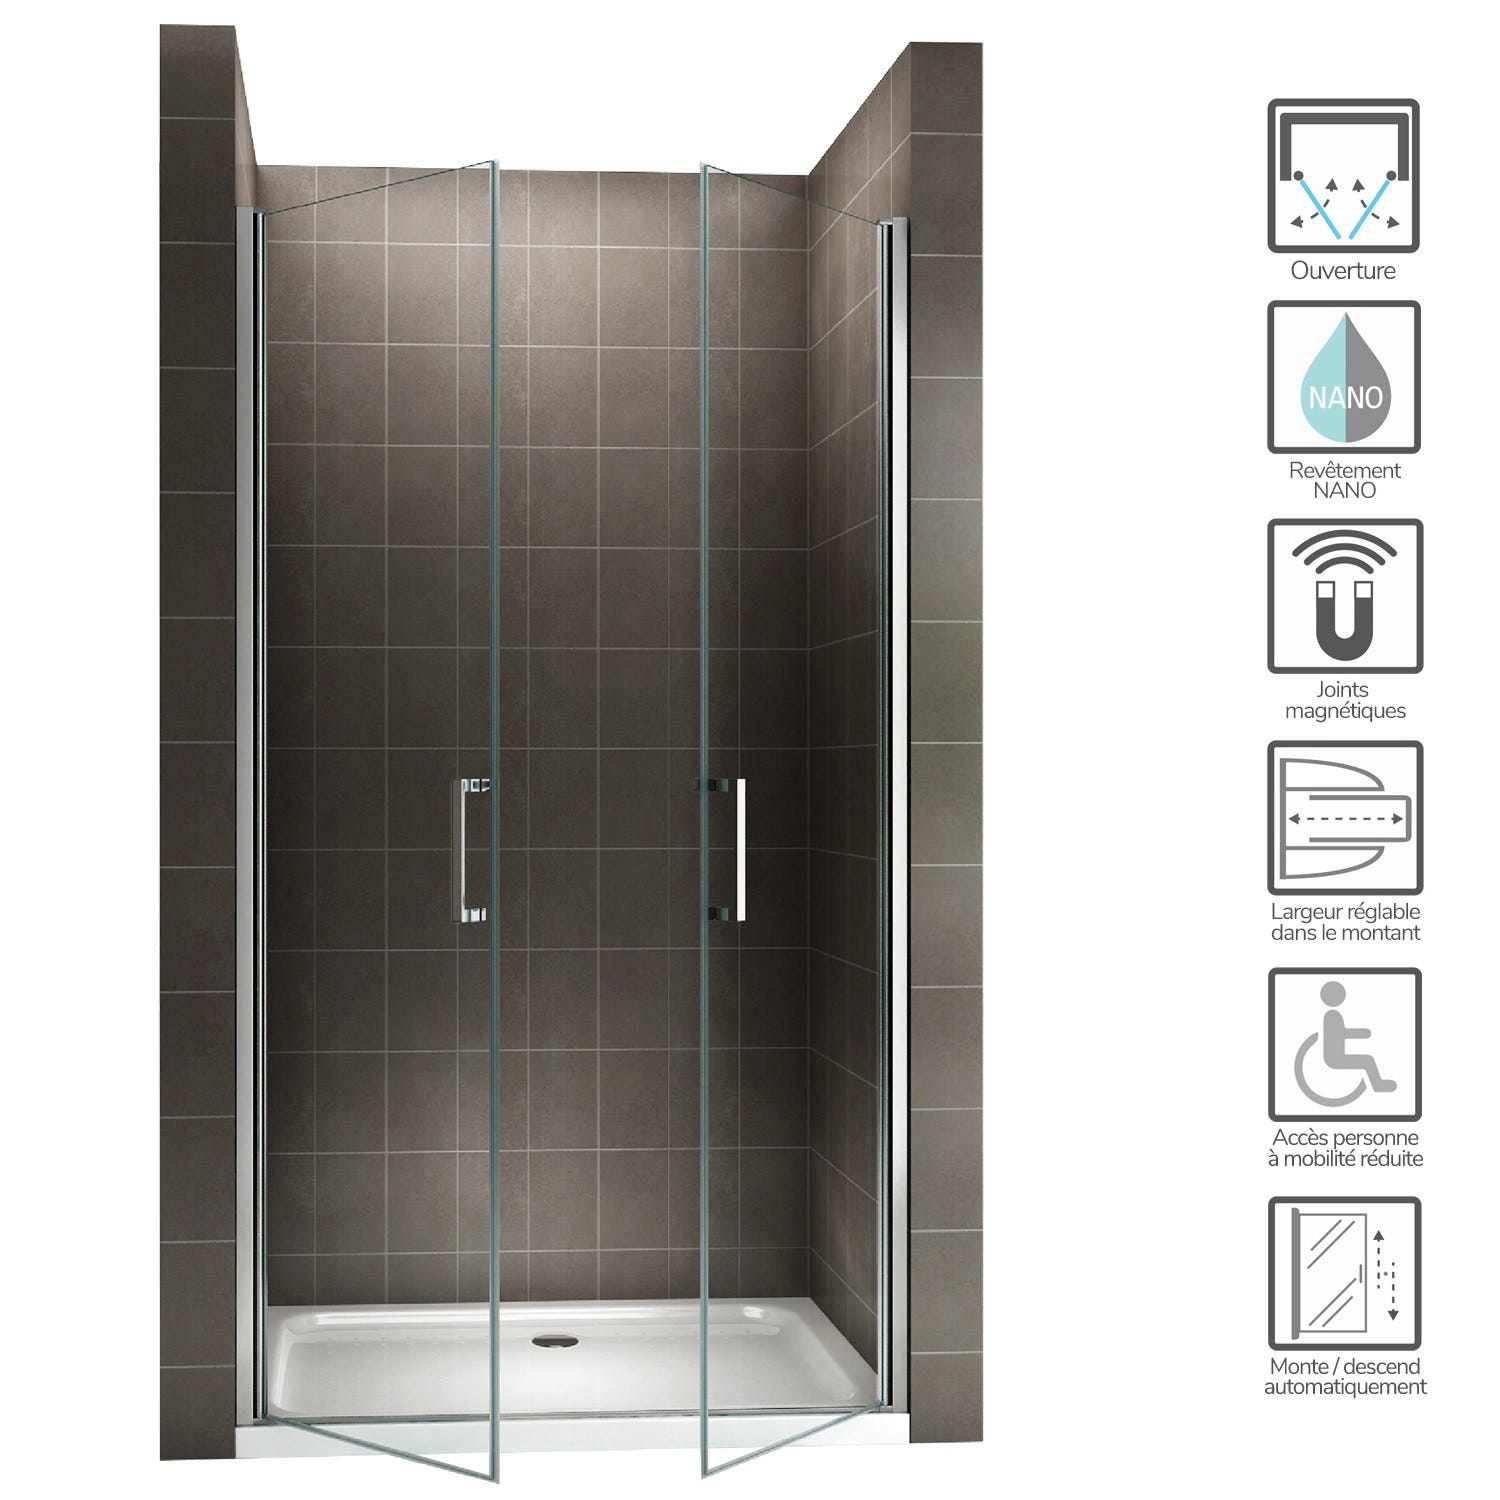 KAYA Porte de douche H 180 largeur réglable 101 à 104 cm verre transparent 1